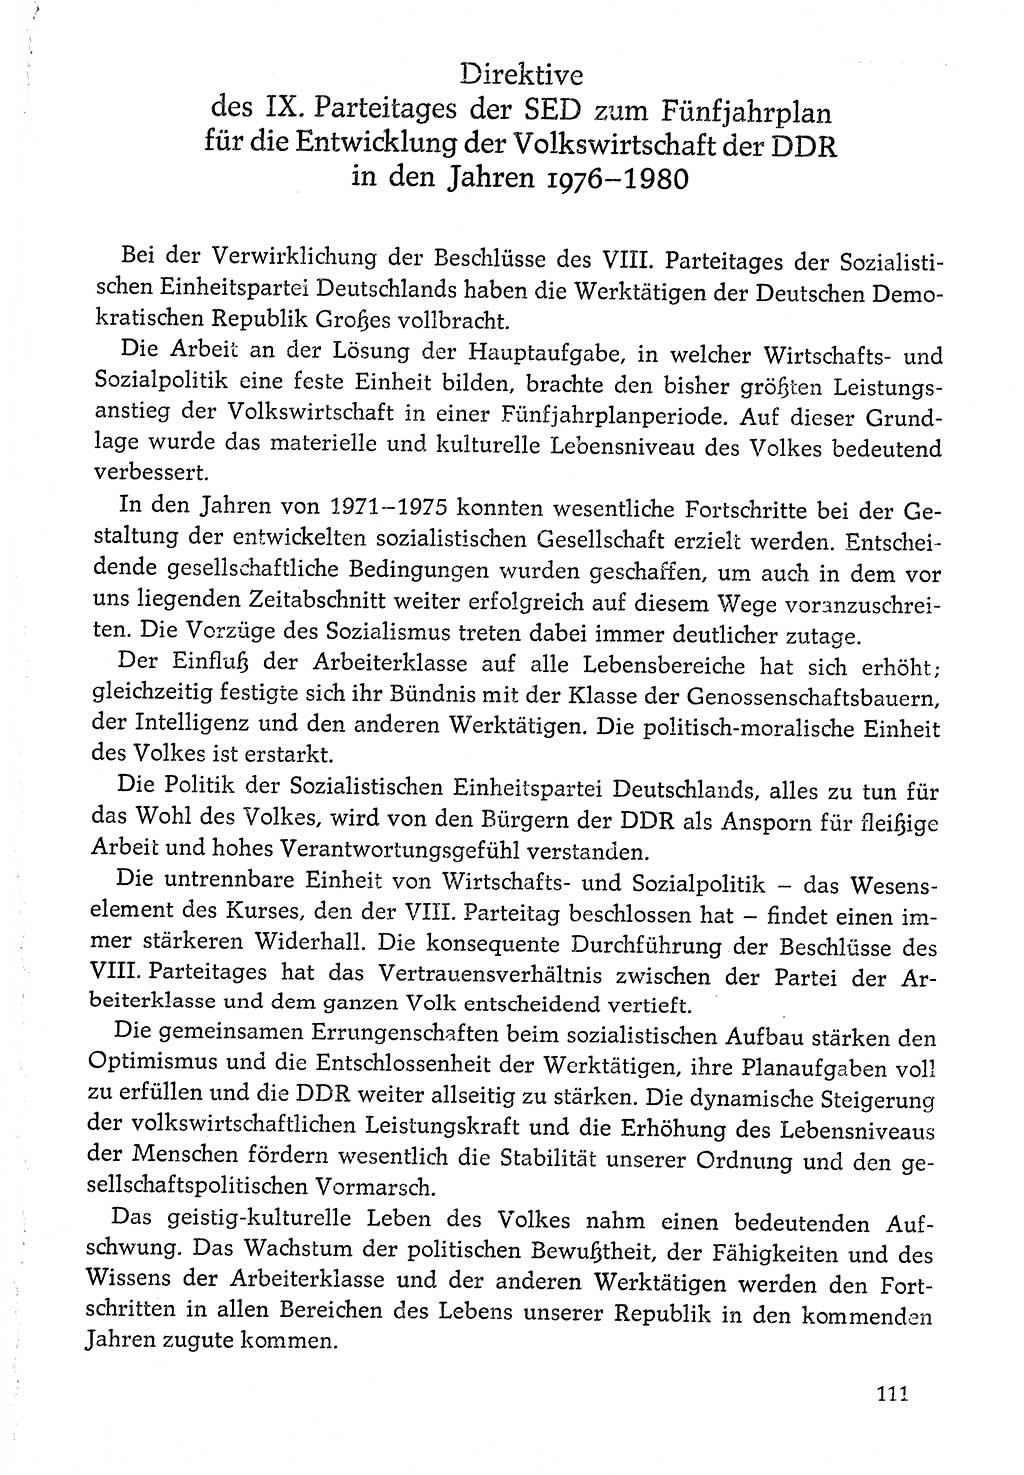 Dokumente der Sozialistischen Einheitspartei Deutschlands (SED) [Deutsche Demokratische Republik (DDR)] 1976-1977, Seite 111 (Dok. SED DDR 1976-1977, S. 111)